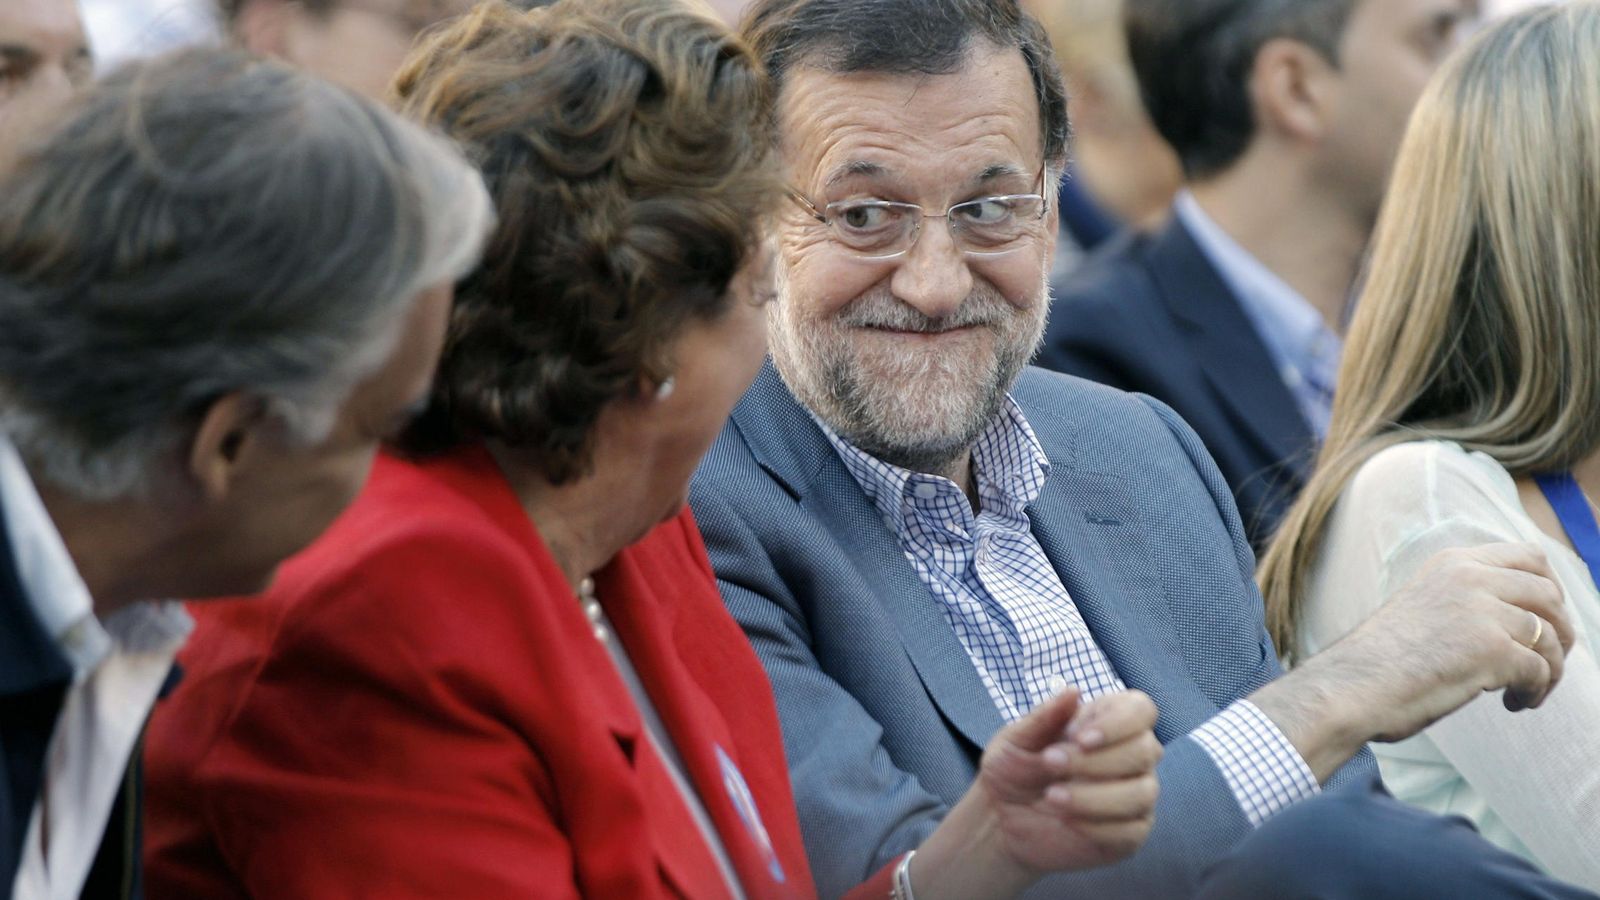 Foto: Mariano Rajoy conversa con la exalcaldesa de Valencia durante un mitin. (EFE)